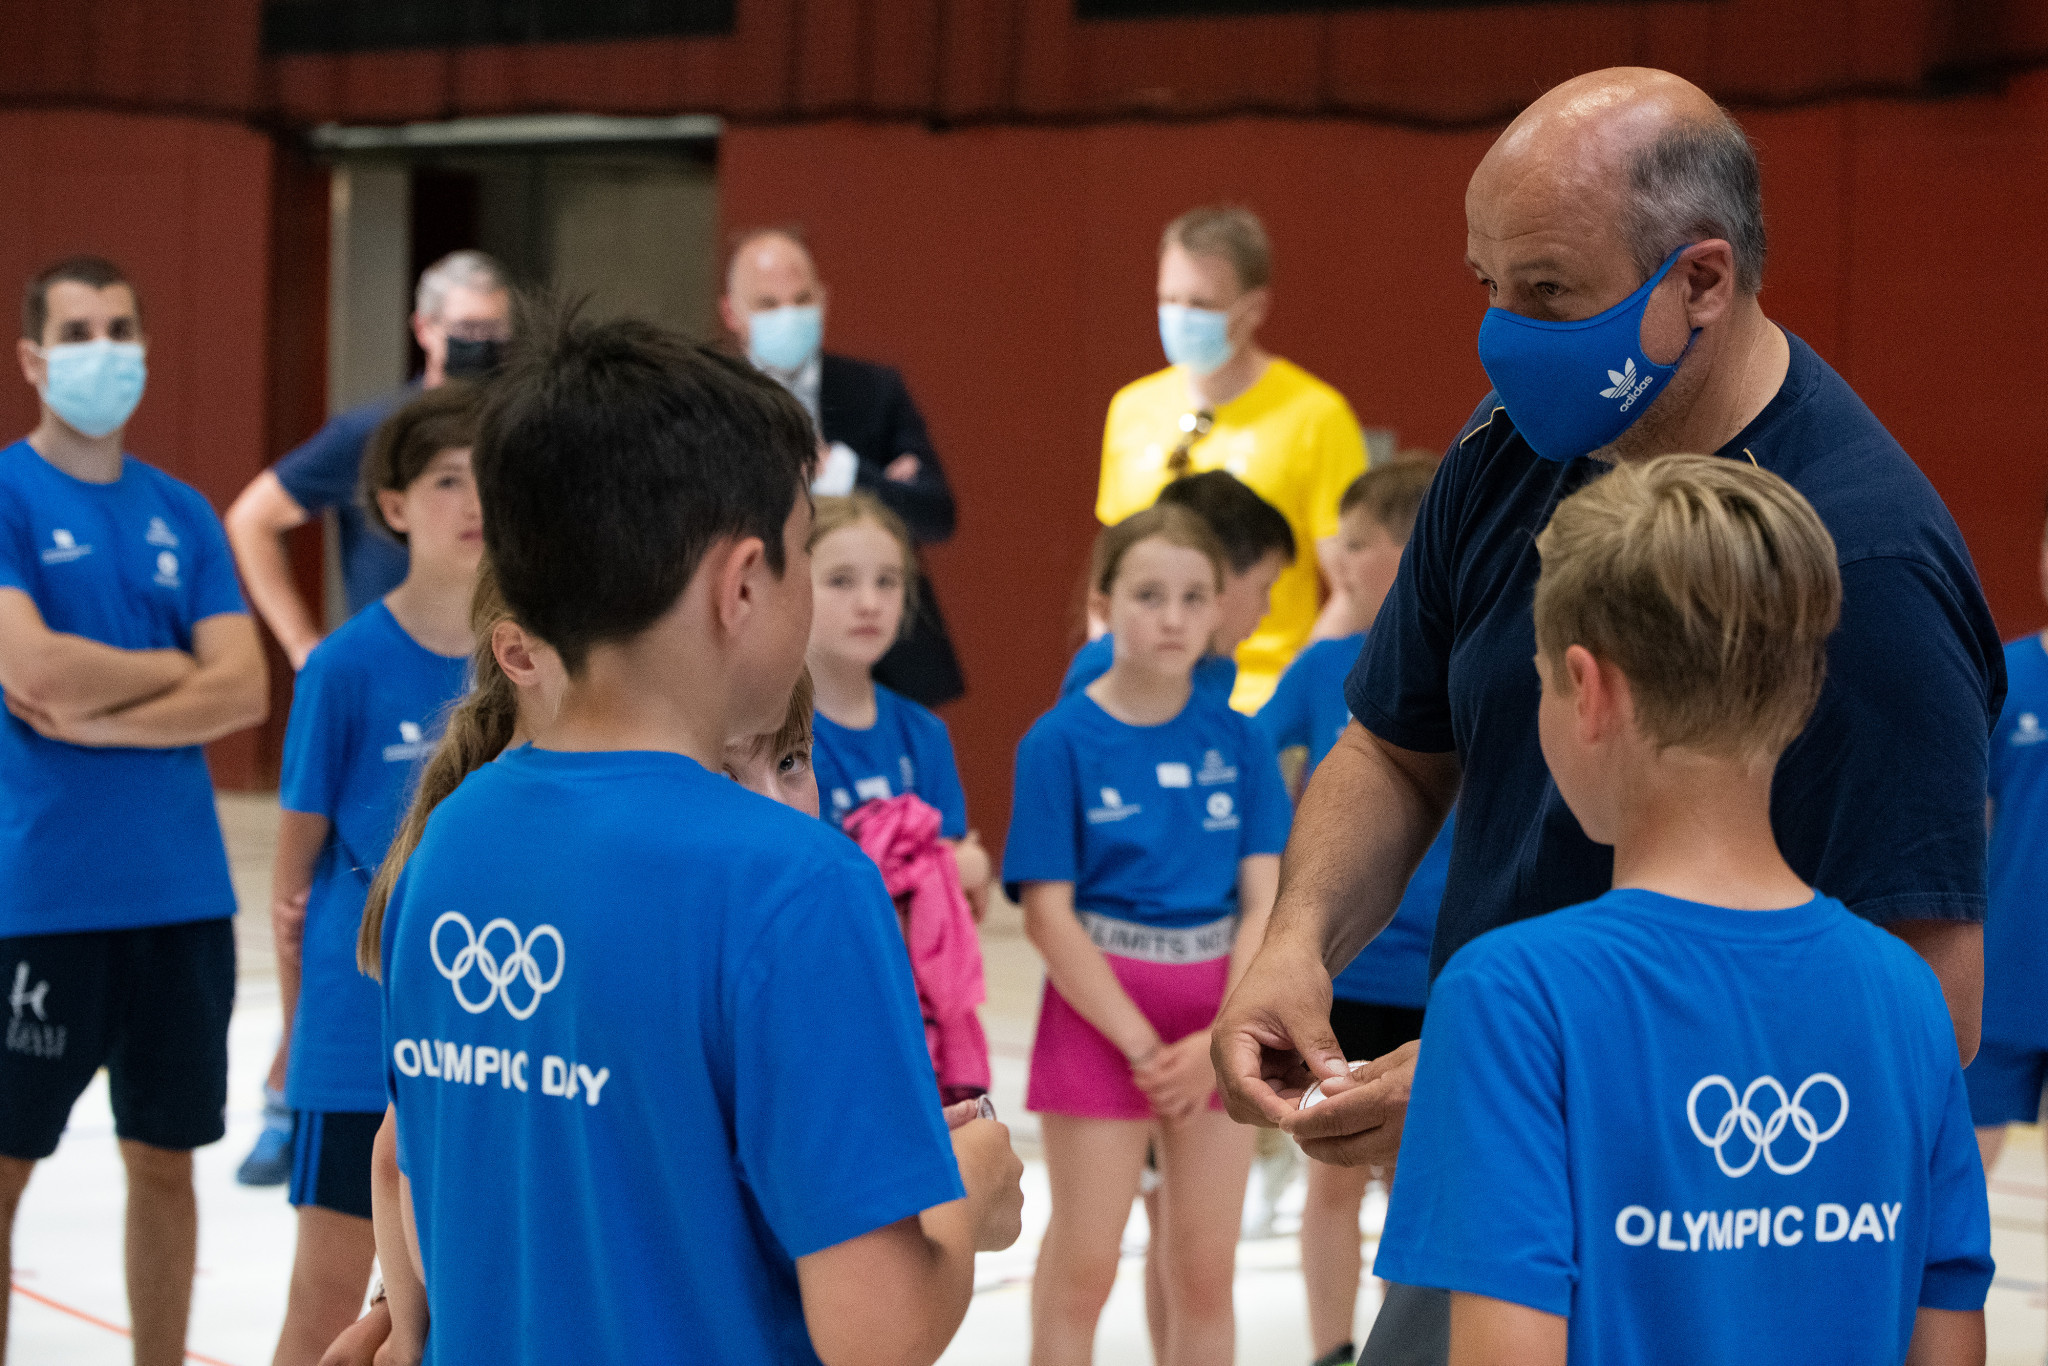 Nearly 600 schoolchildren have taken part in Olympic Day celebrations in Liechtenstein ©LOC